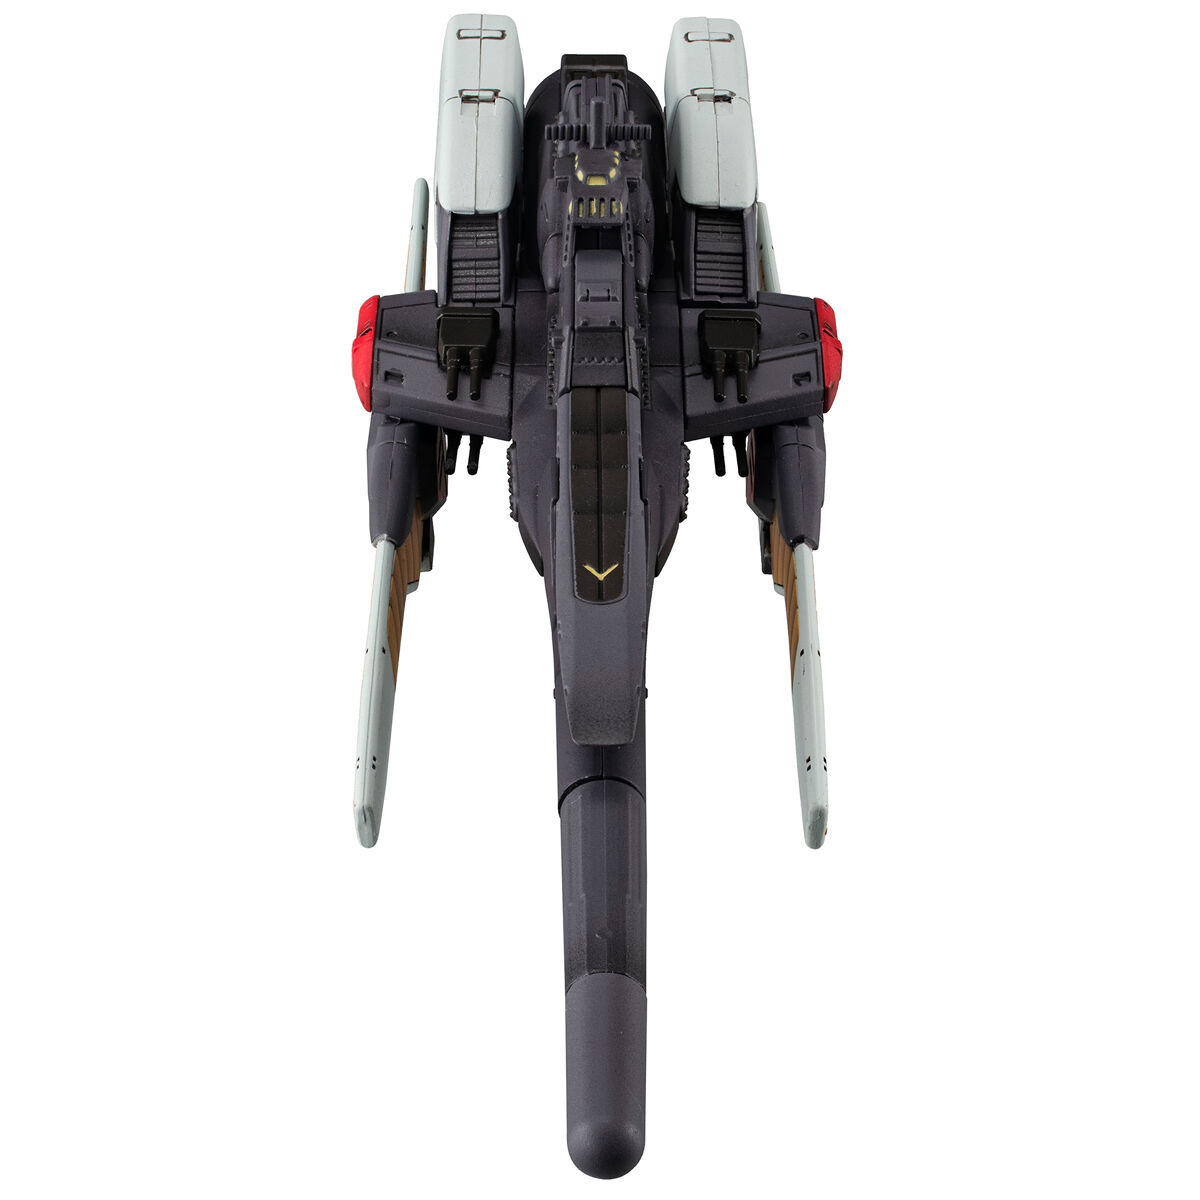 コスモフリートスペシャル『リーンホースJr.Re.』機動戦士Vガンダム 完成品モデル-005